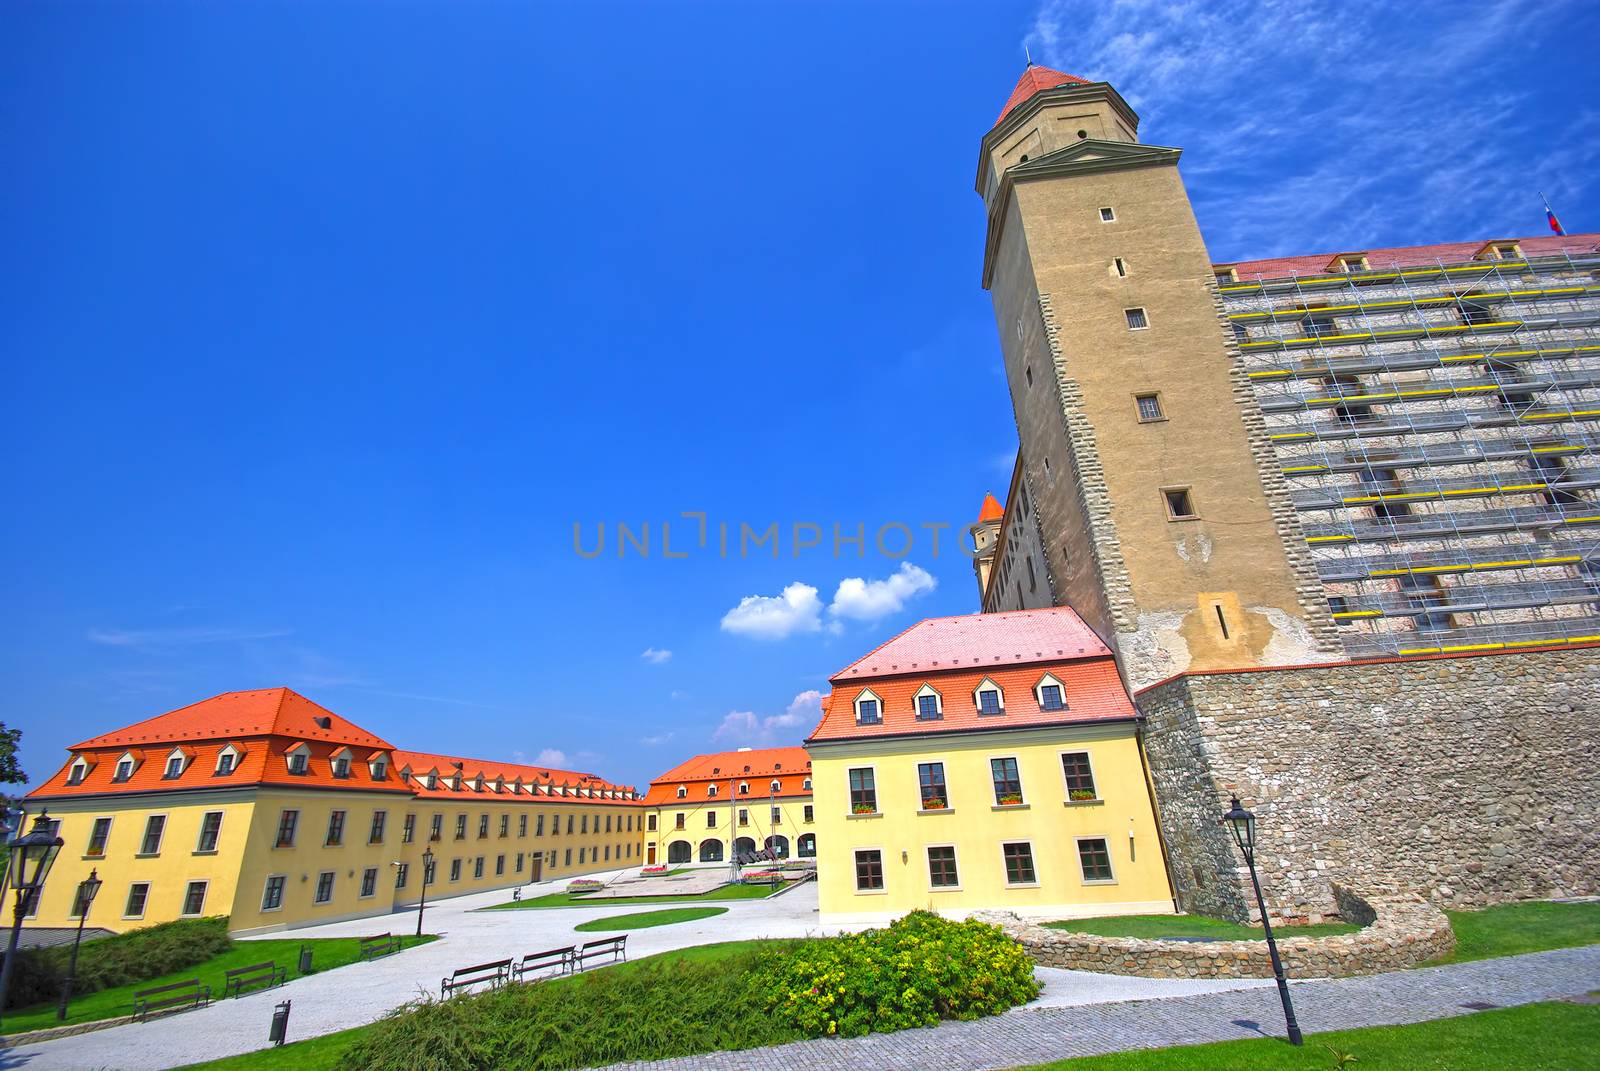 Historic building of Hrad, medieval Castle in Bratislava